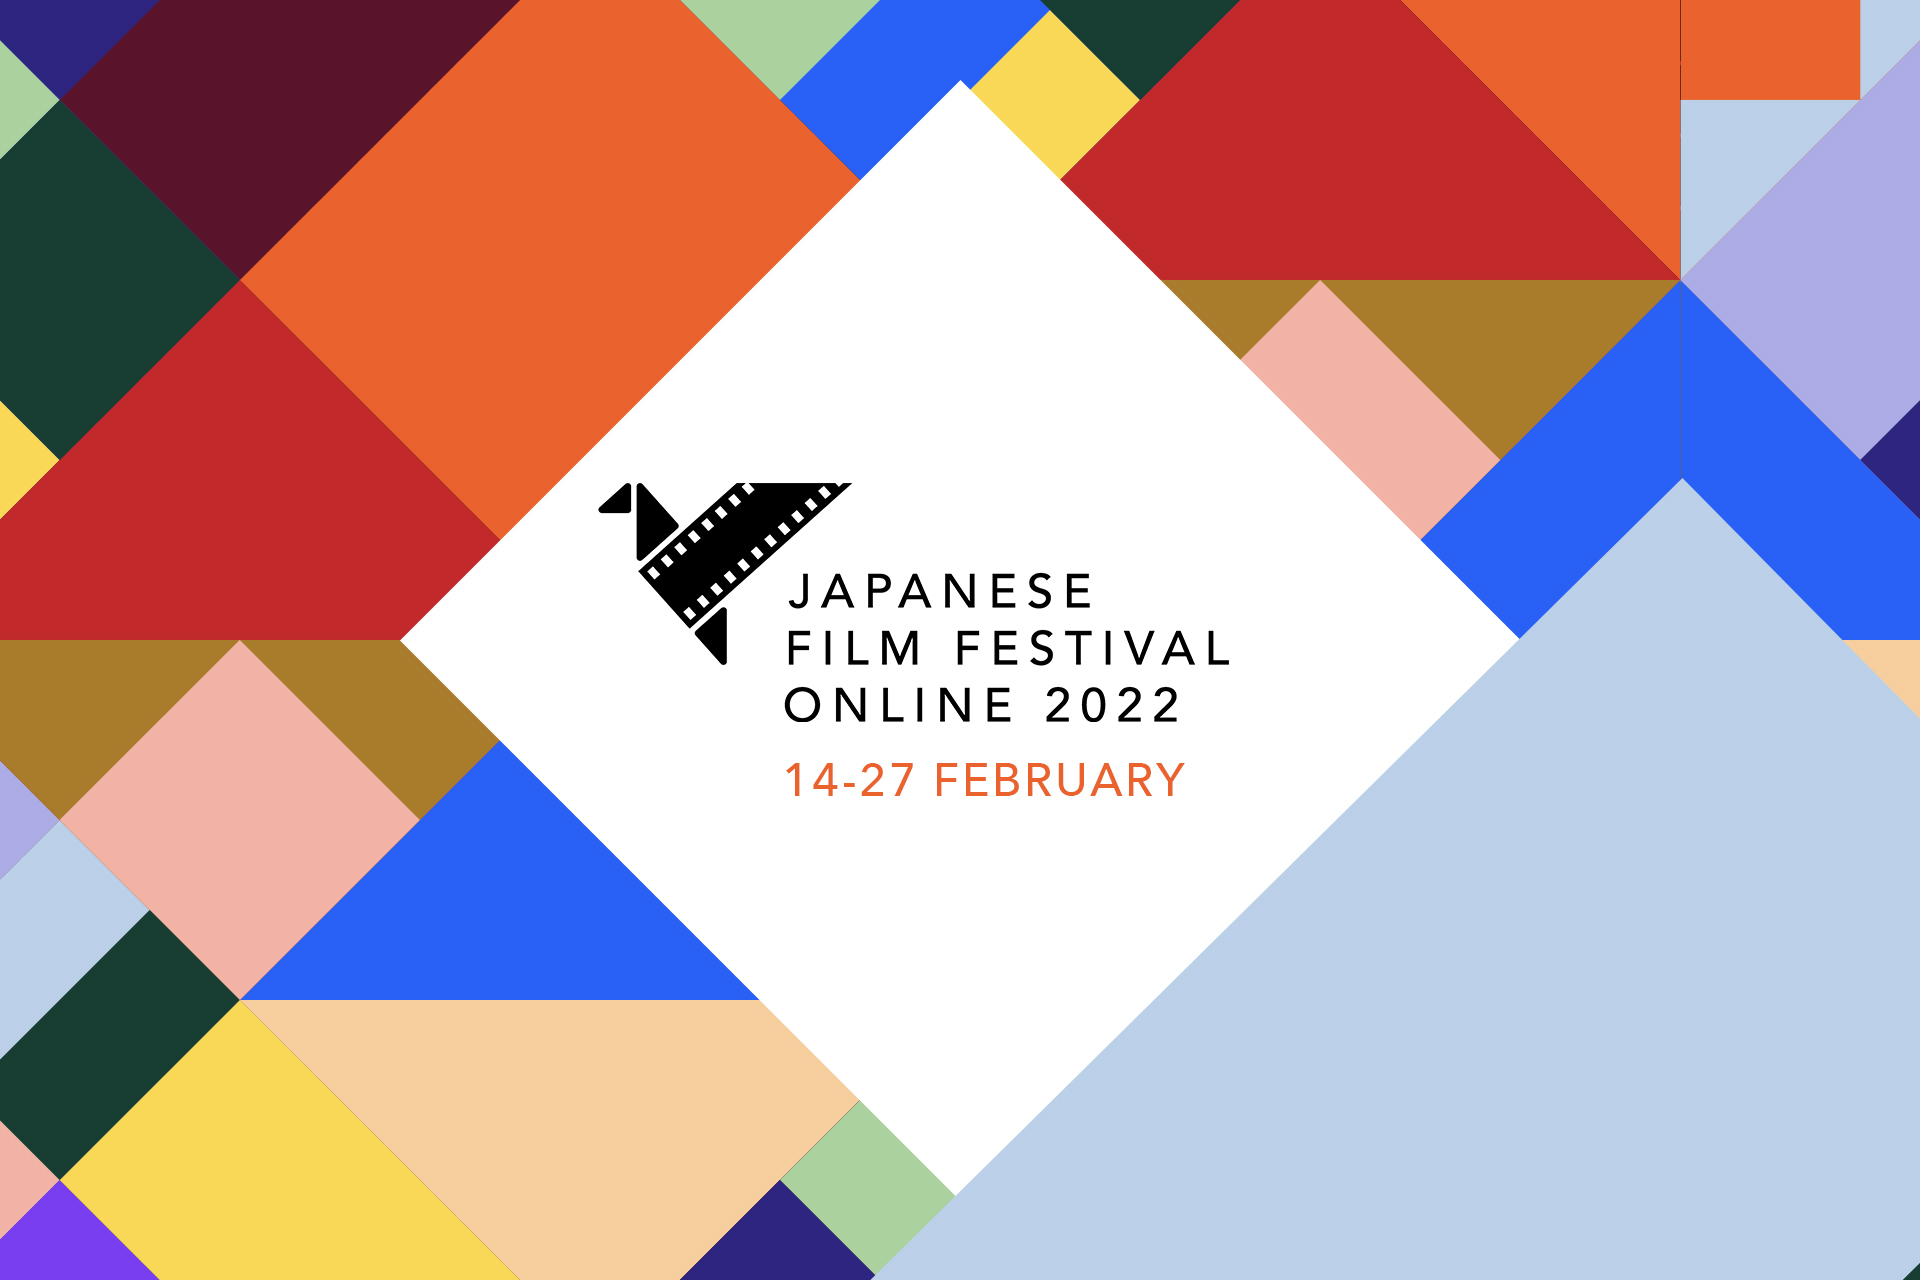 Japanese Film Festival Online 2022